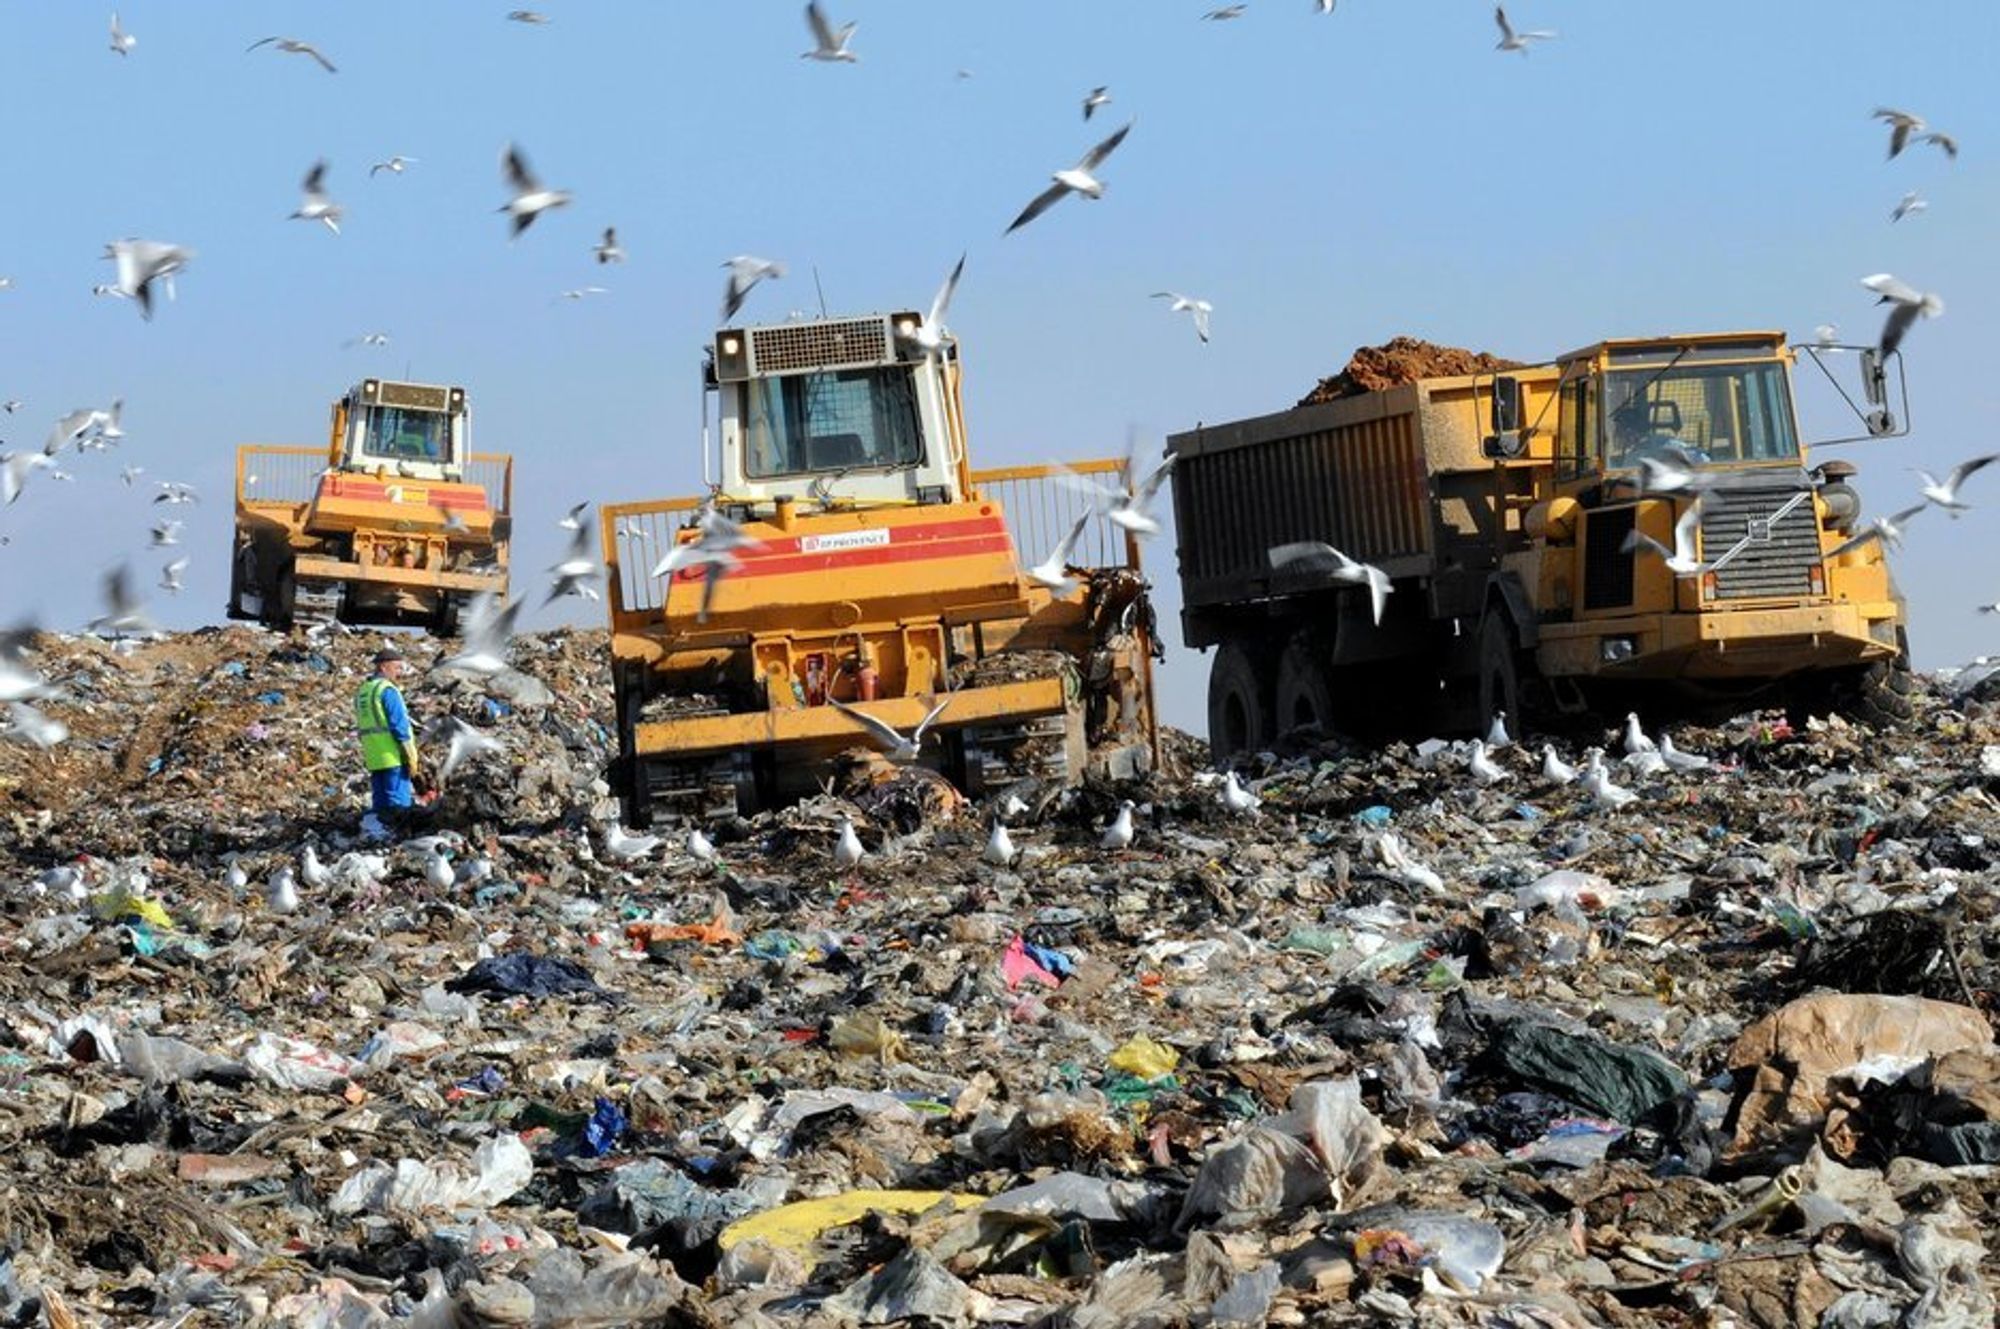 I 2020 kan søppelmengden ha kommet opp i 558 kilo per hode, dersom ikke europeiske land får på plass en mer effektiv håndtering av avfallet.